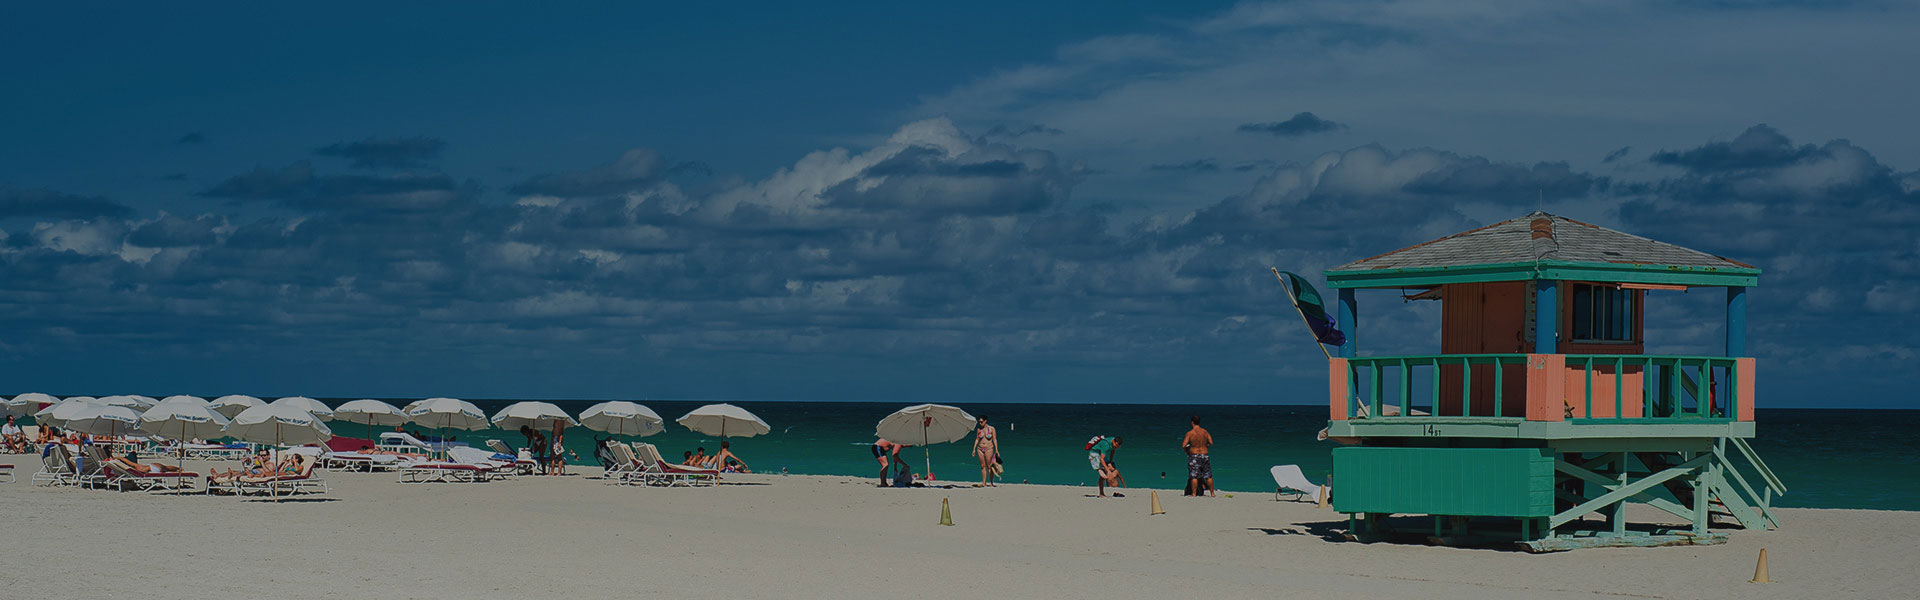 Cabaña de playa en una playa de Miami